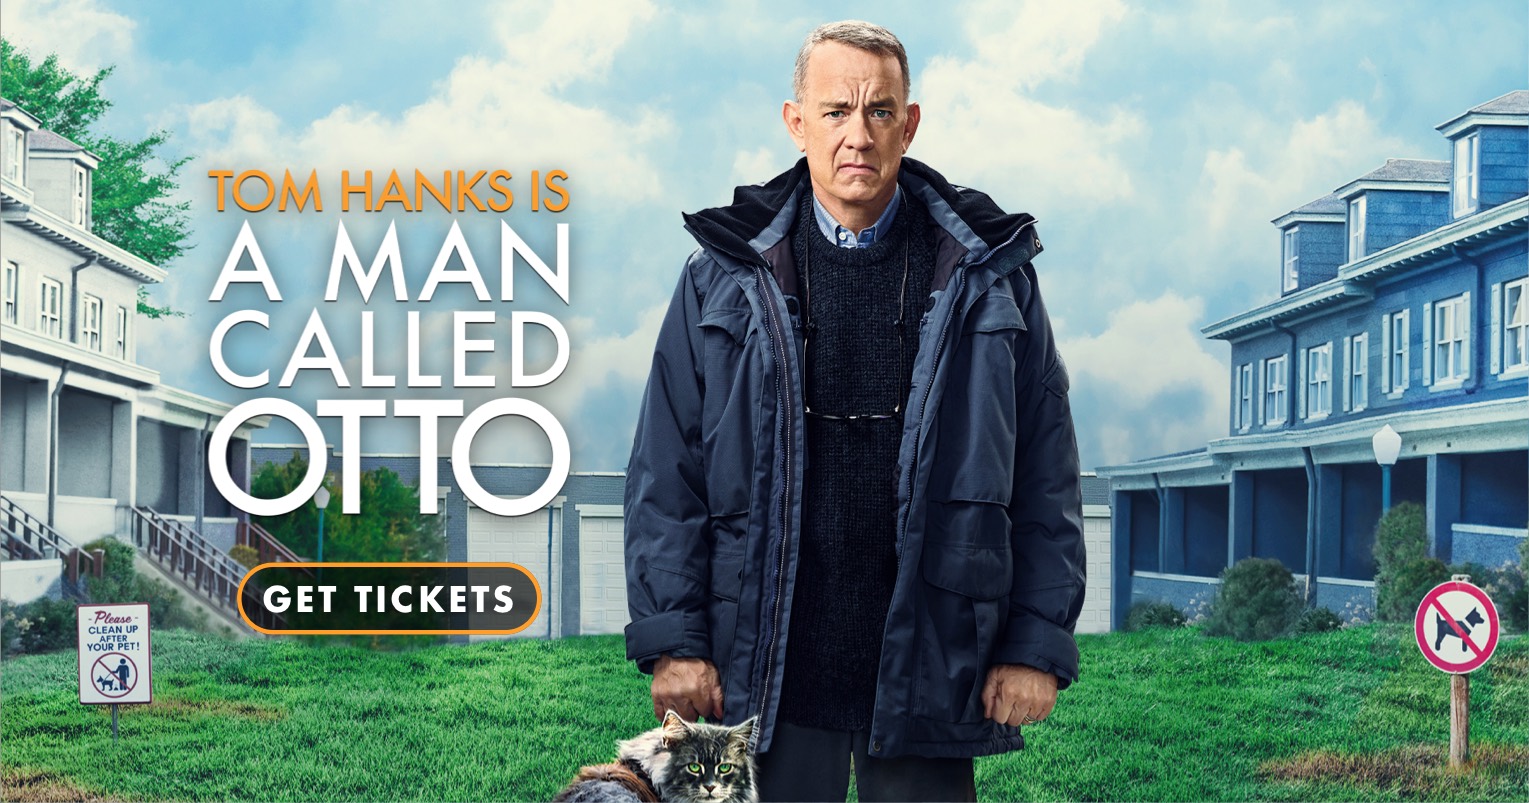 الفيلم الجديد للنجم العالمي توم هانكس A Man Called Otto